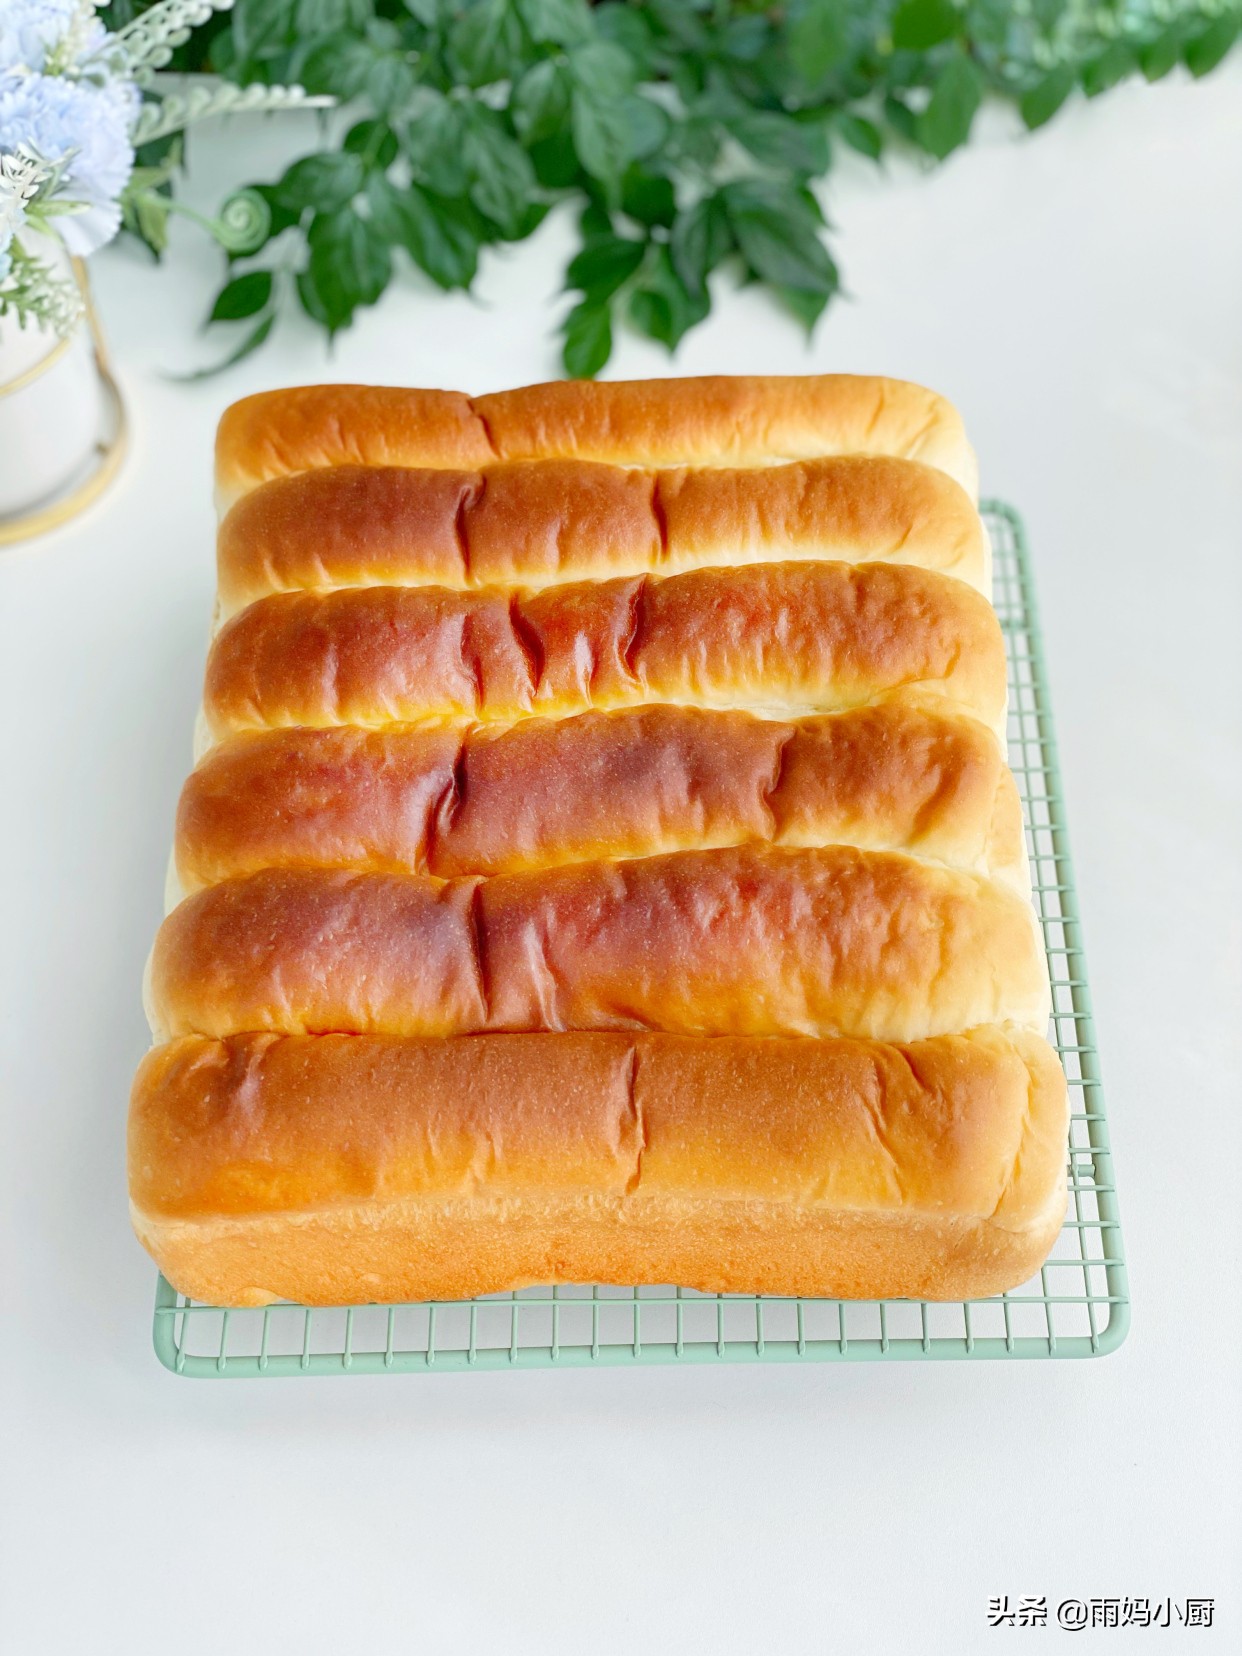 做过的面包里，最松软的就是奶排包，组织细腻又拉丝奶香味十足